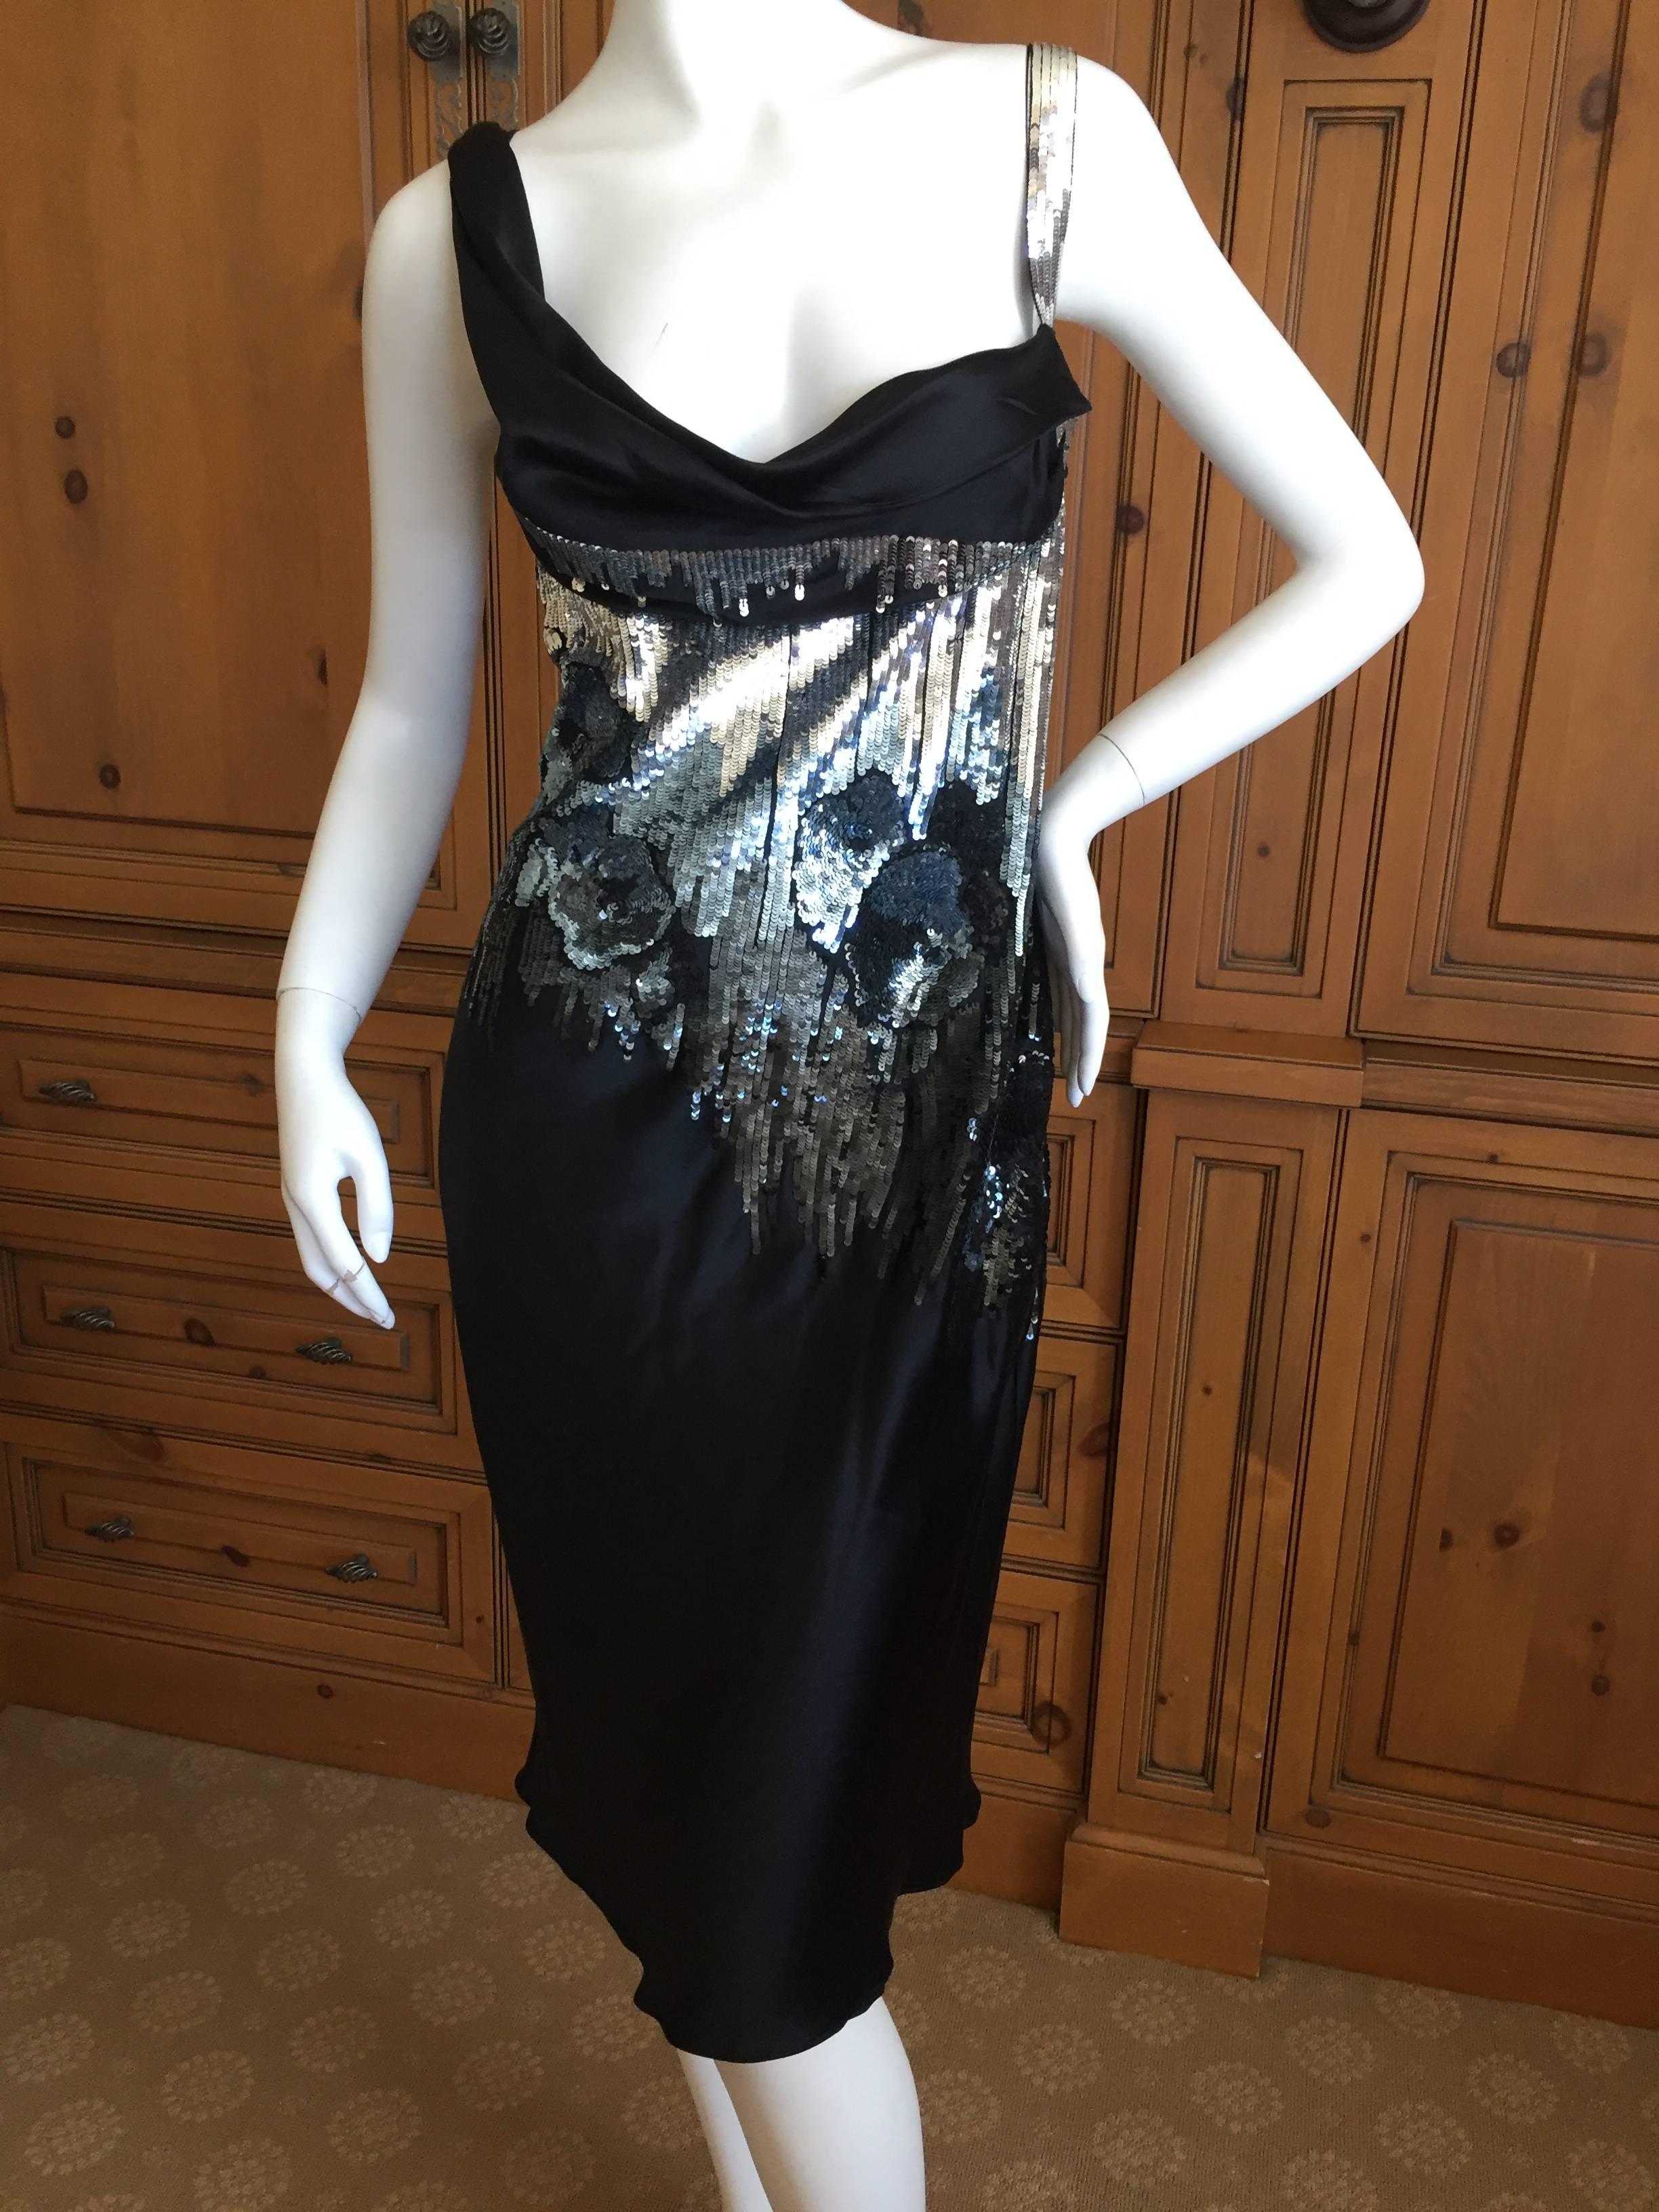 John Galliano Sequin Black Silk Cocktail Dress.

Bust 36”, Waist 39”, Hip 41”, Length 42”